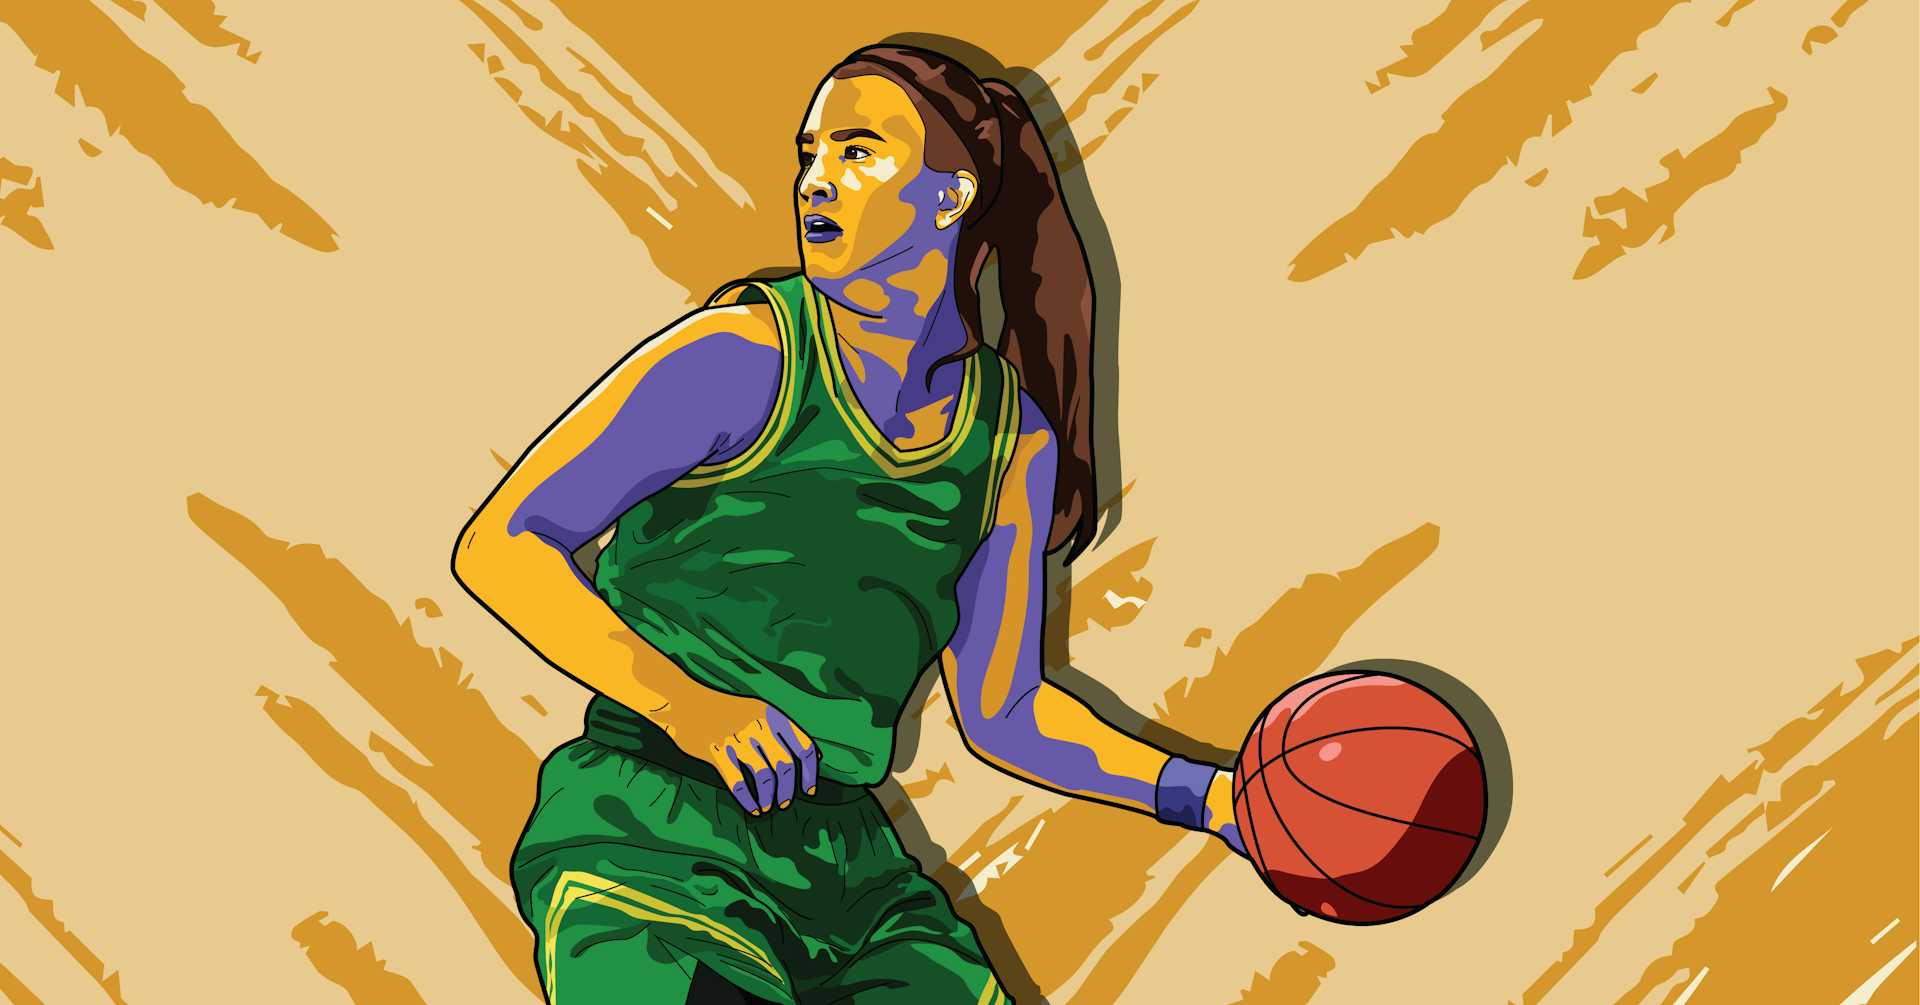 WNBA Viewership & Ratings Growing In 2021